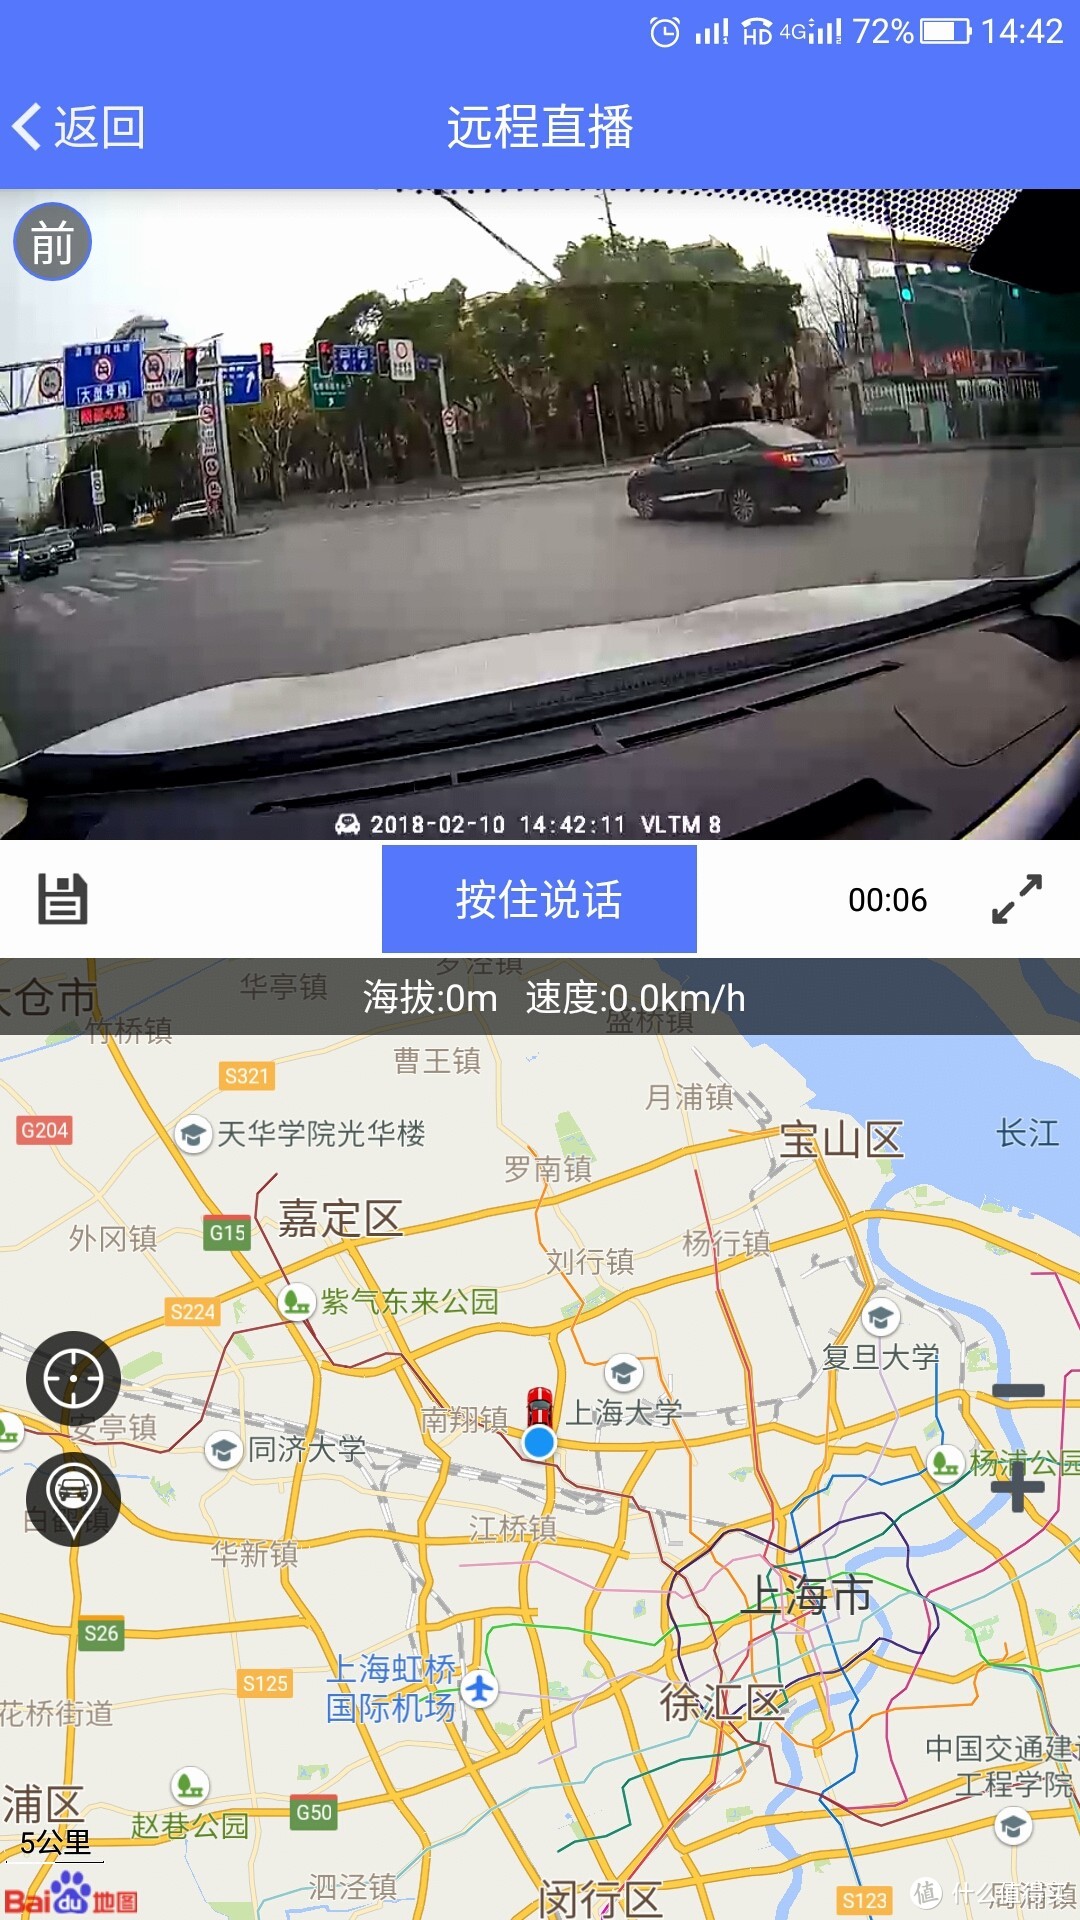 甚至还能和车辆内的人员进行视频直播互动